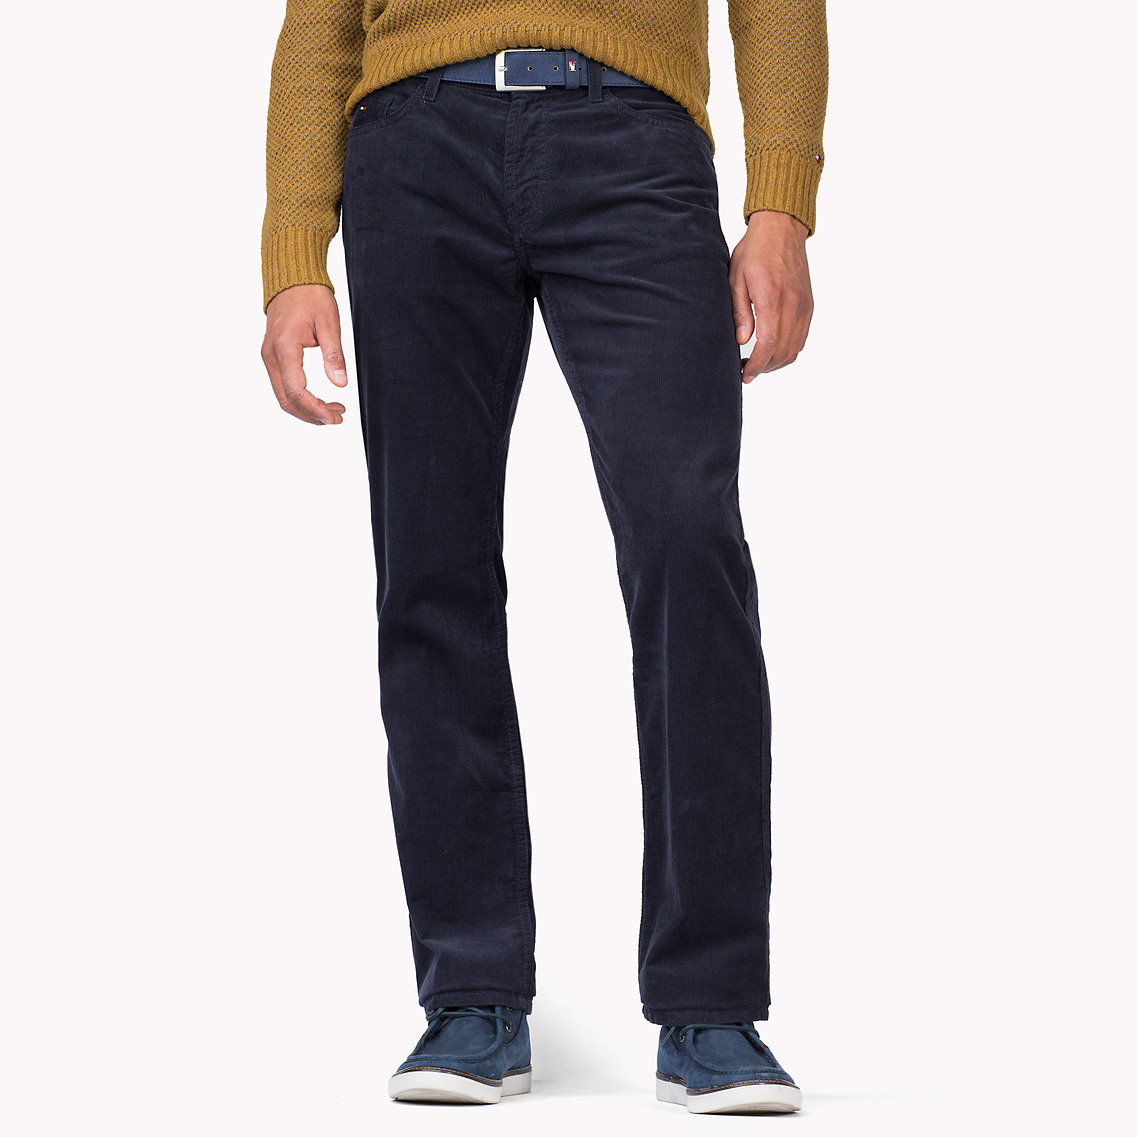 Tommy Hilfiger Mercer 5 Pocket Cord Regular Fit Pant in Graphite (Grey) for  Men - Lyst